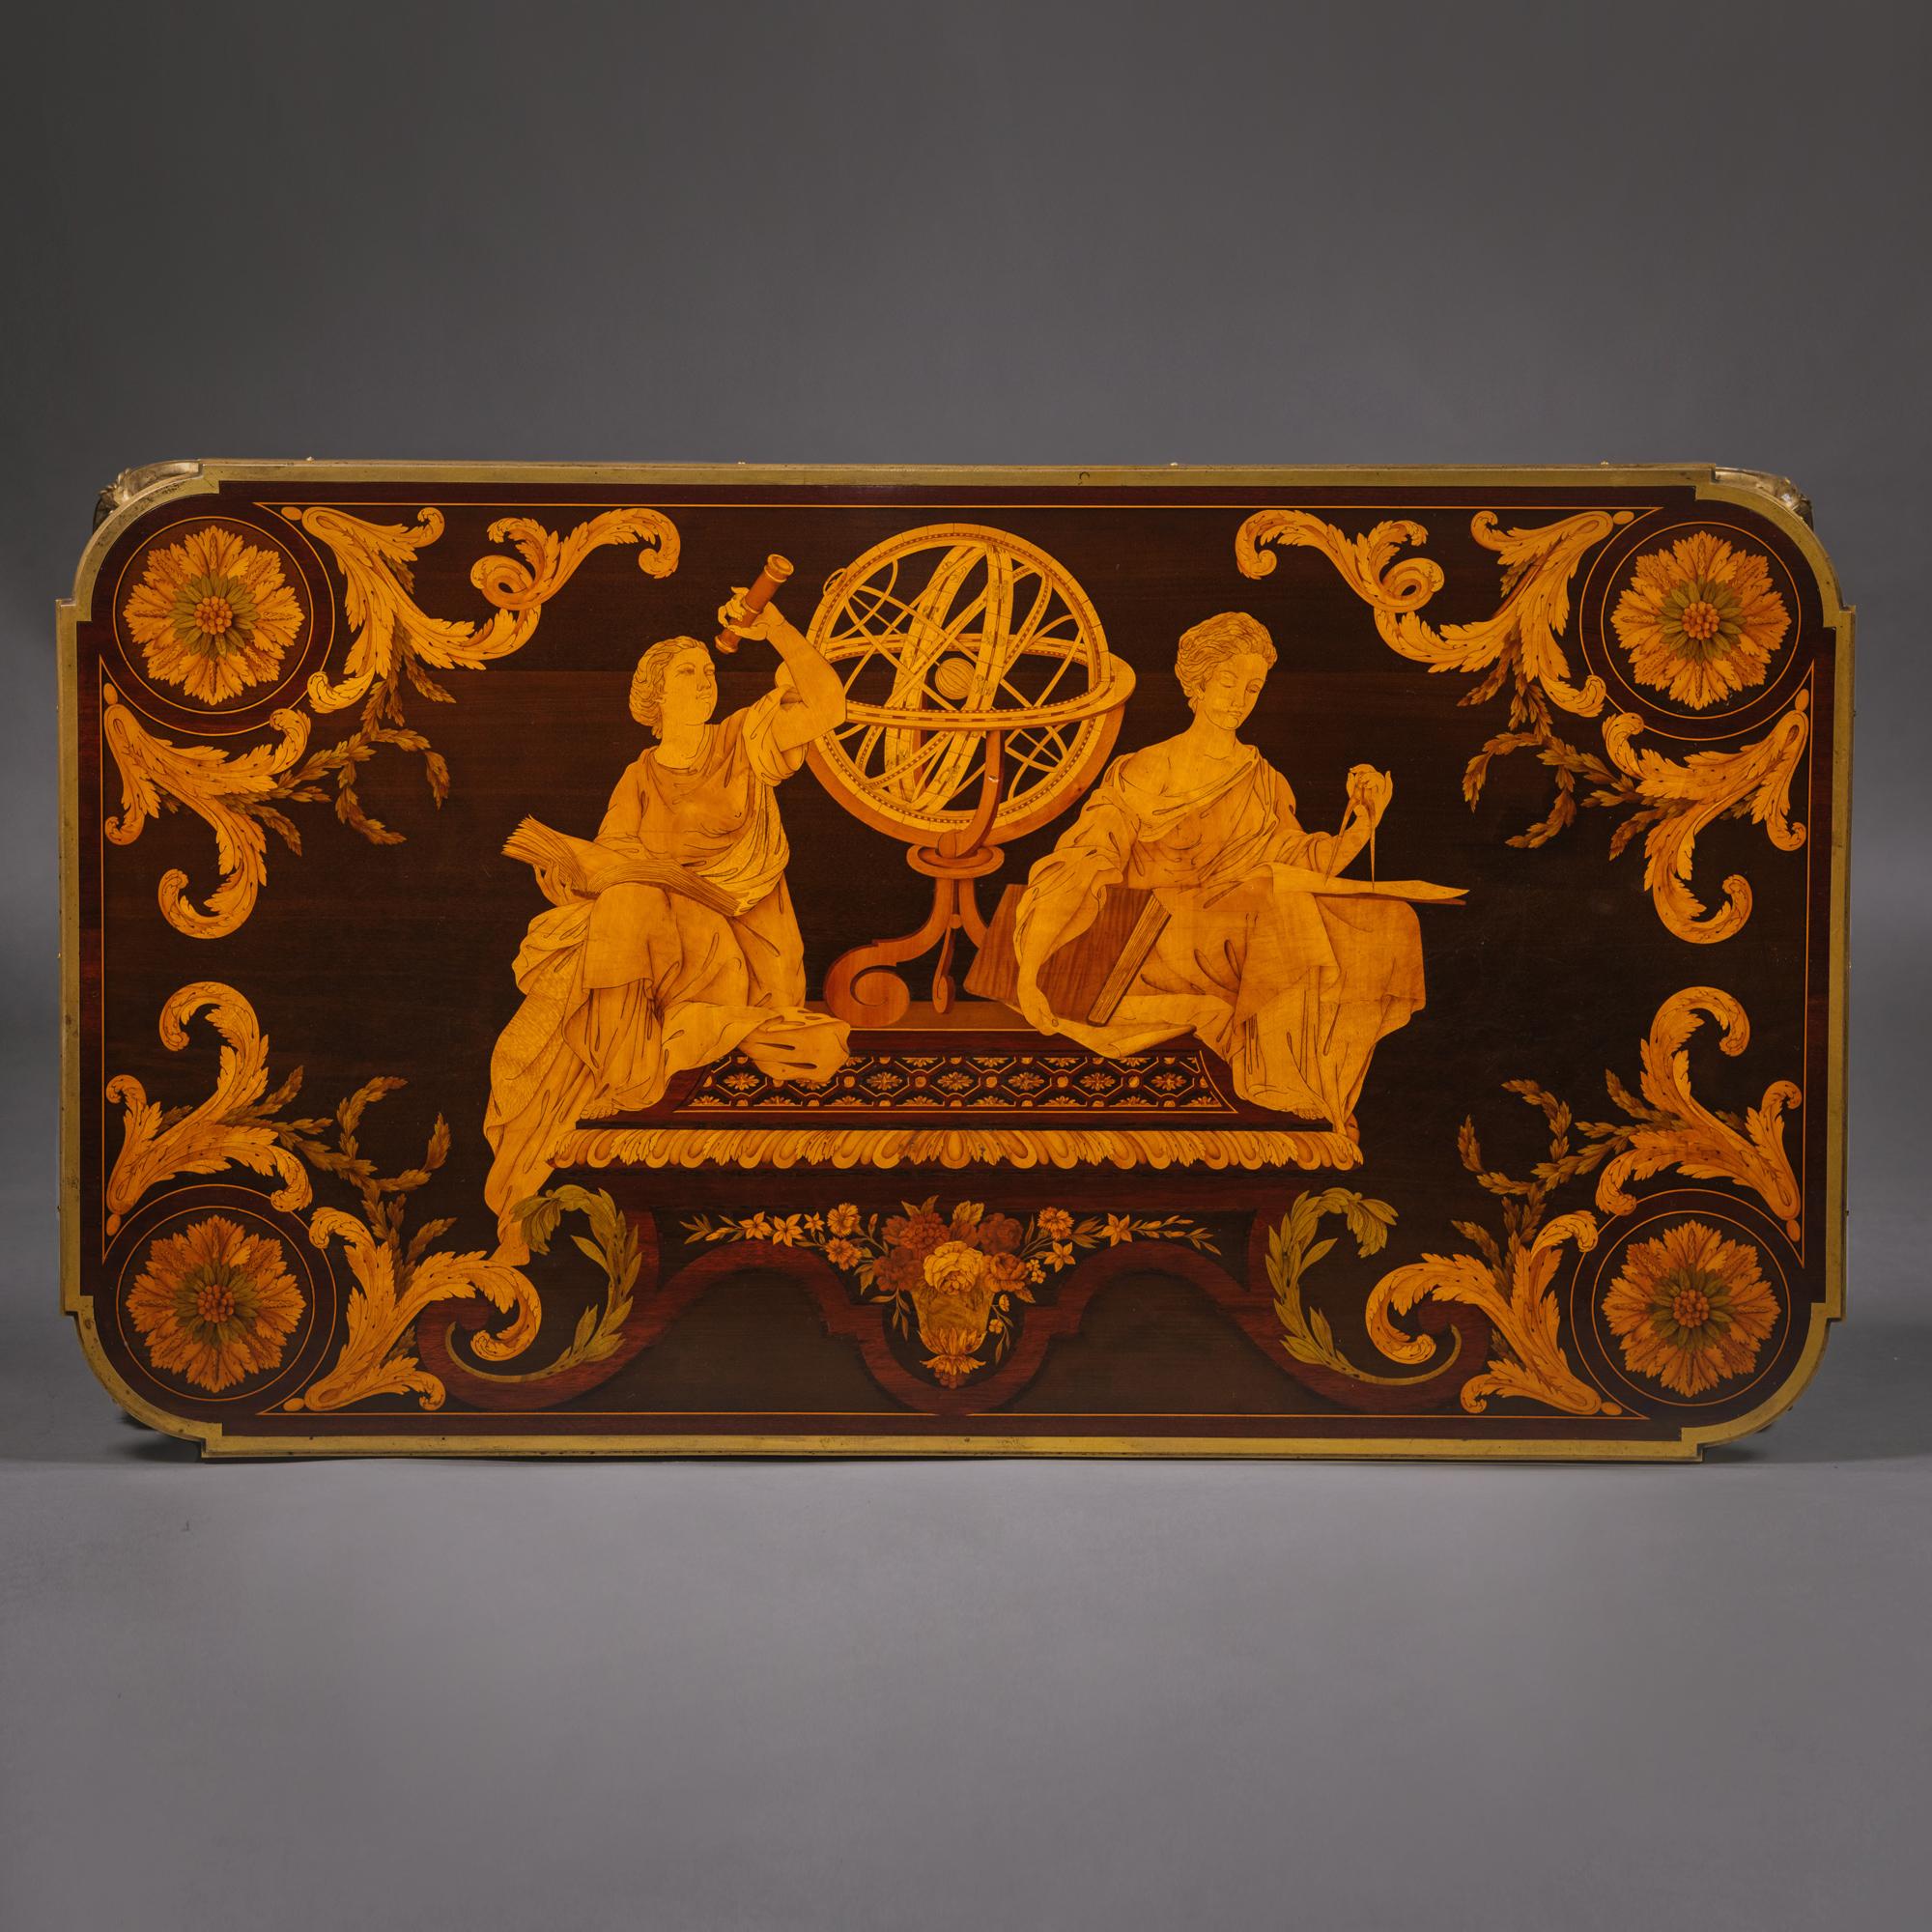 'Table des Muses'
Ein vergoldeter, bronzierter und mit Intarsien verzierter Mitteltisch im Louis-XVI-Stil 
Von Emmanuel-Alfred (Dit Alfred II) Beurdeley, nach dem Modell von Jean-Henri Riesener.

 Gestempelt 'A BEURDELEY A PARIS'.

Der kunstvolle